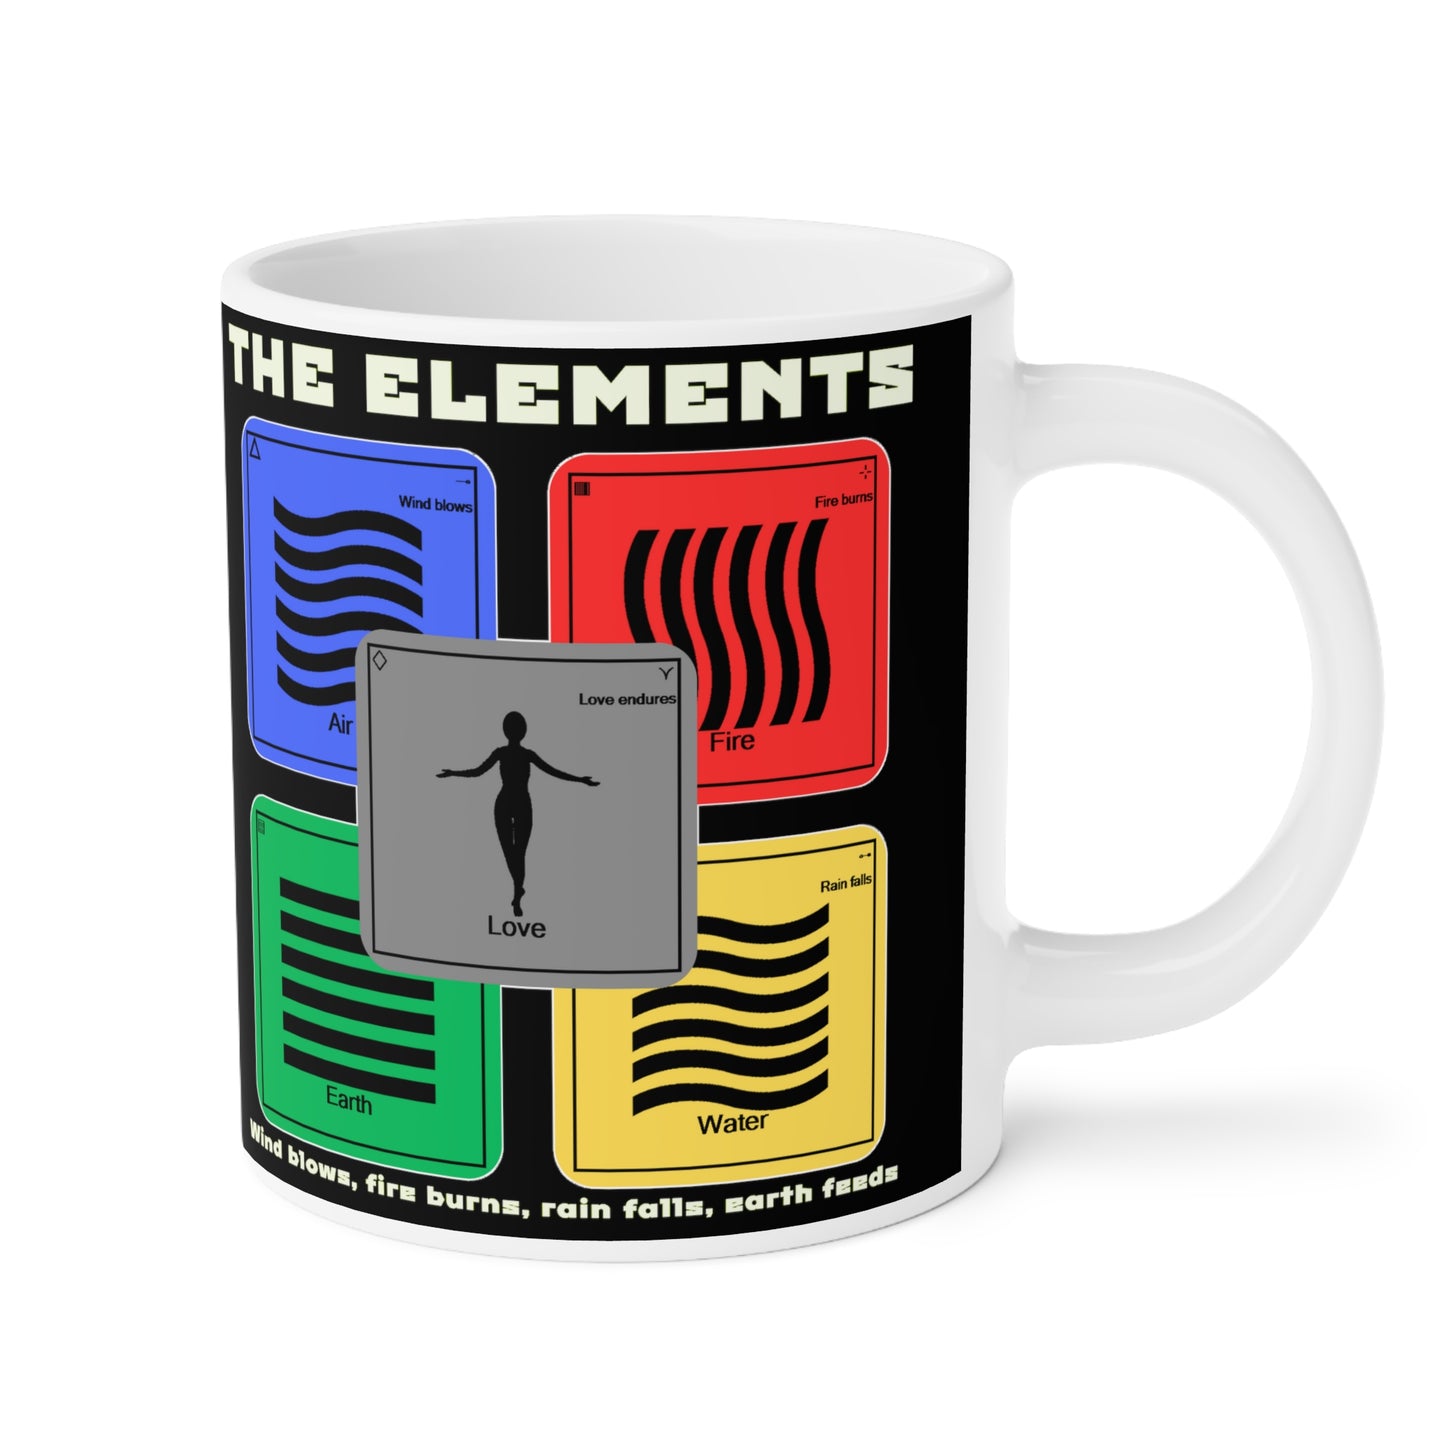 The Elements Jumbo Ceramic Mug 20 oz